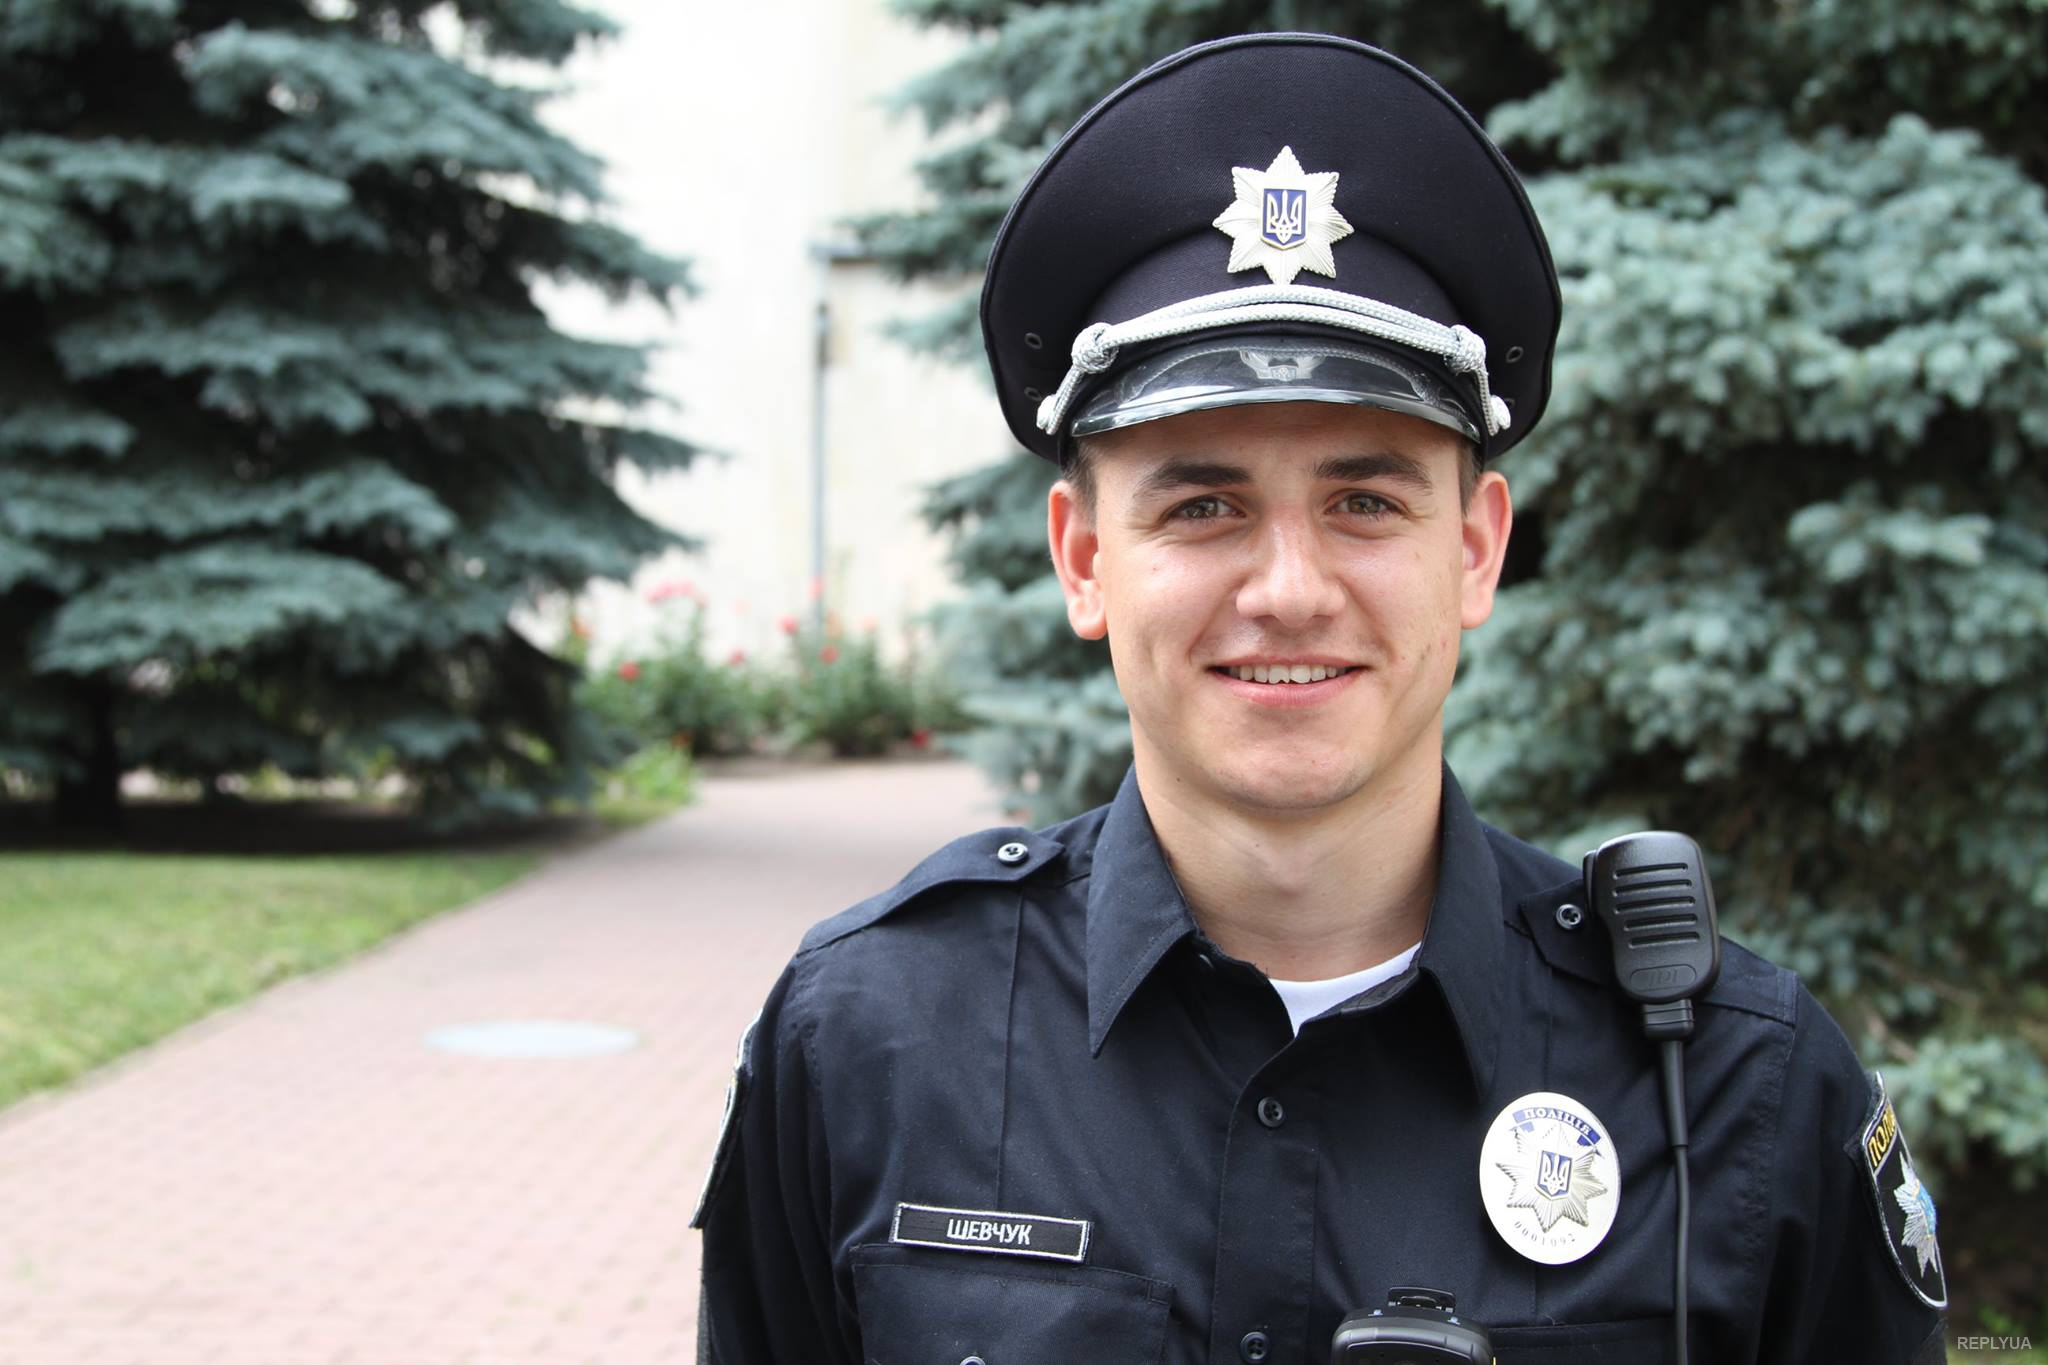 Покажи картинки полицейских. Полицейская форма. Форма полиции Украины. Форма украинских полицейских. Формама полиции Украины.